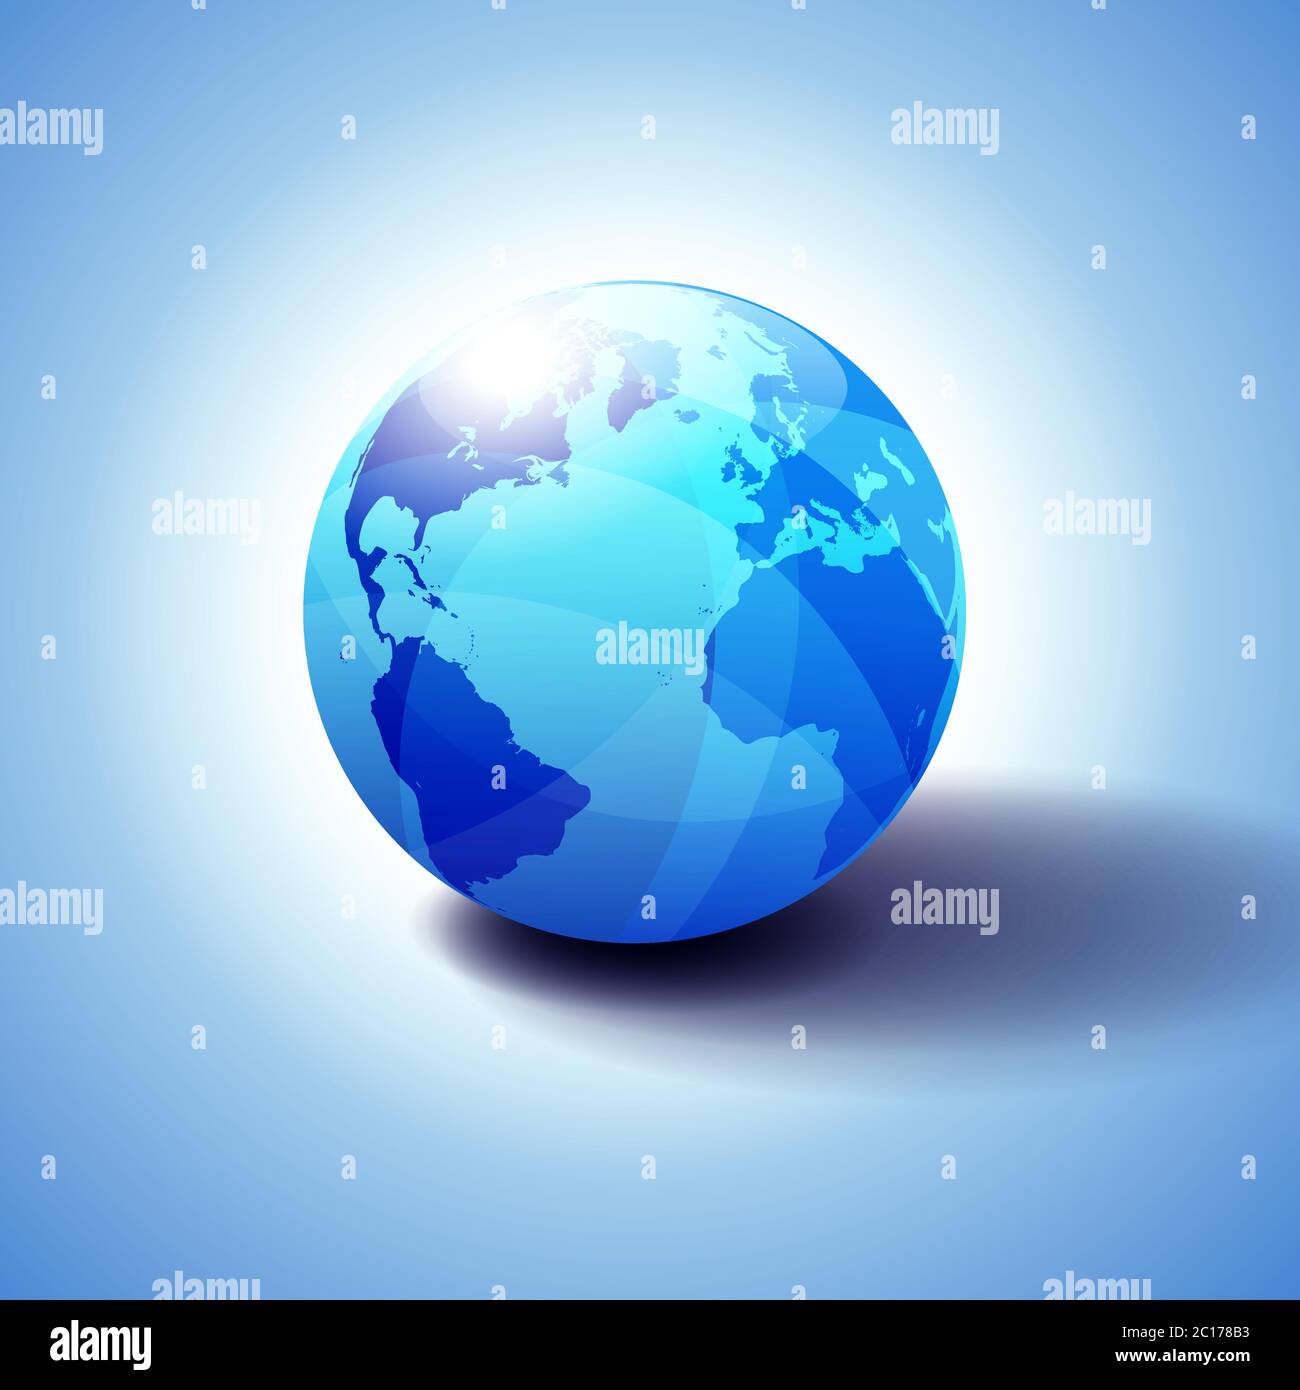 Europe, Amérique, Afrique arrière-plan avec illustration 3D Globe Icon, sphère brillante, brillante avec carte globale en bleu subtil donnant une sensation de transparence. Illustration de Vecteur